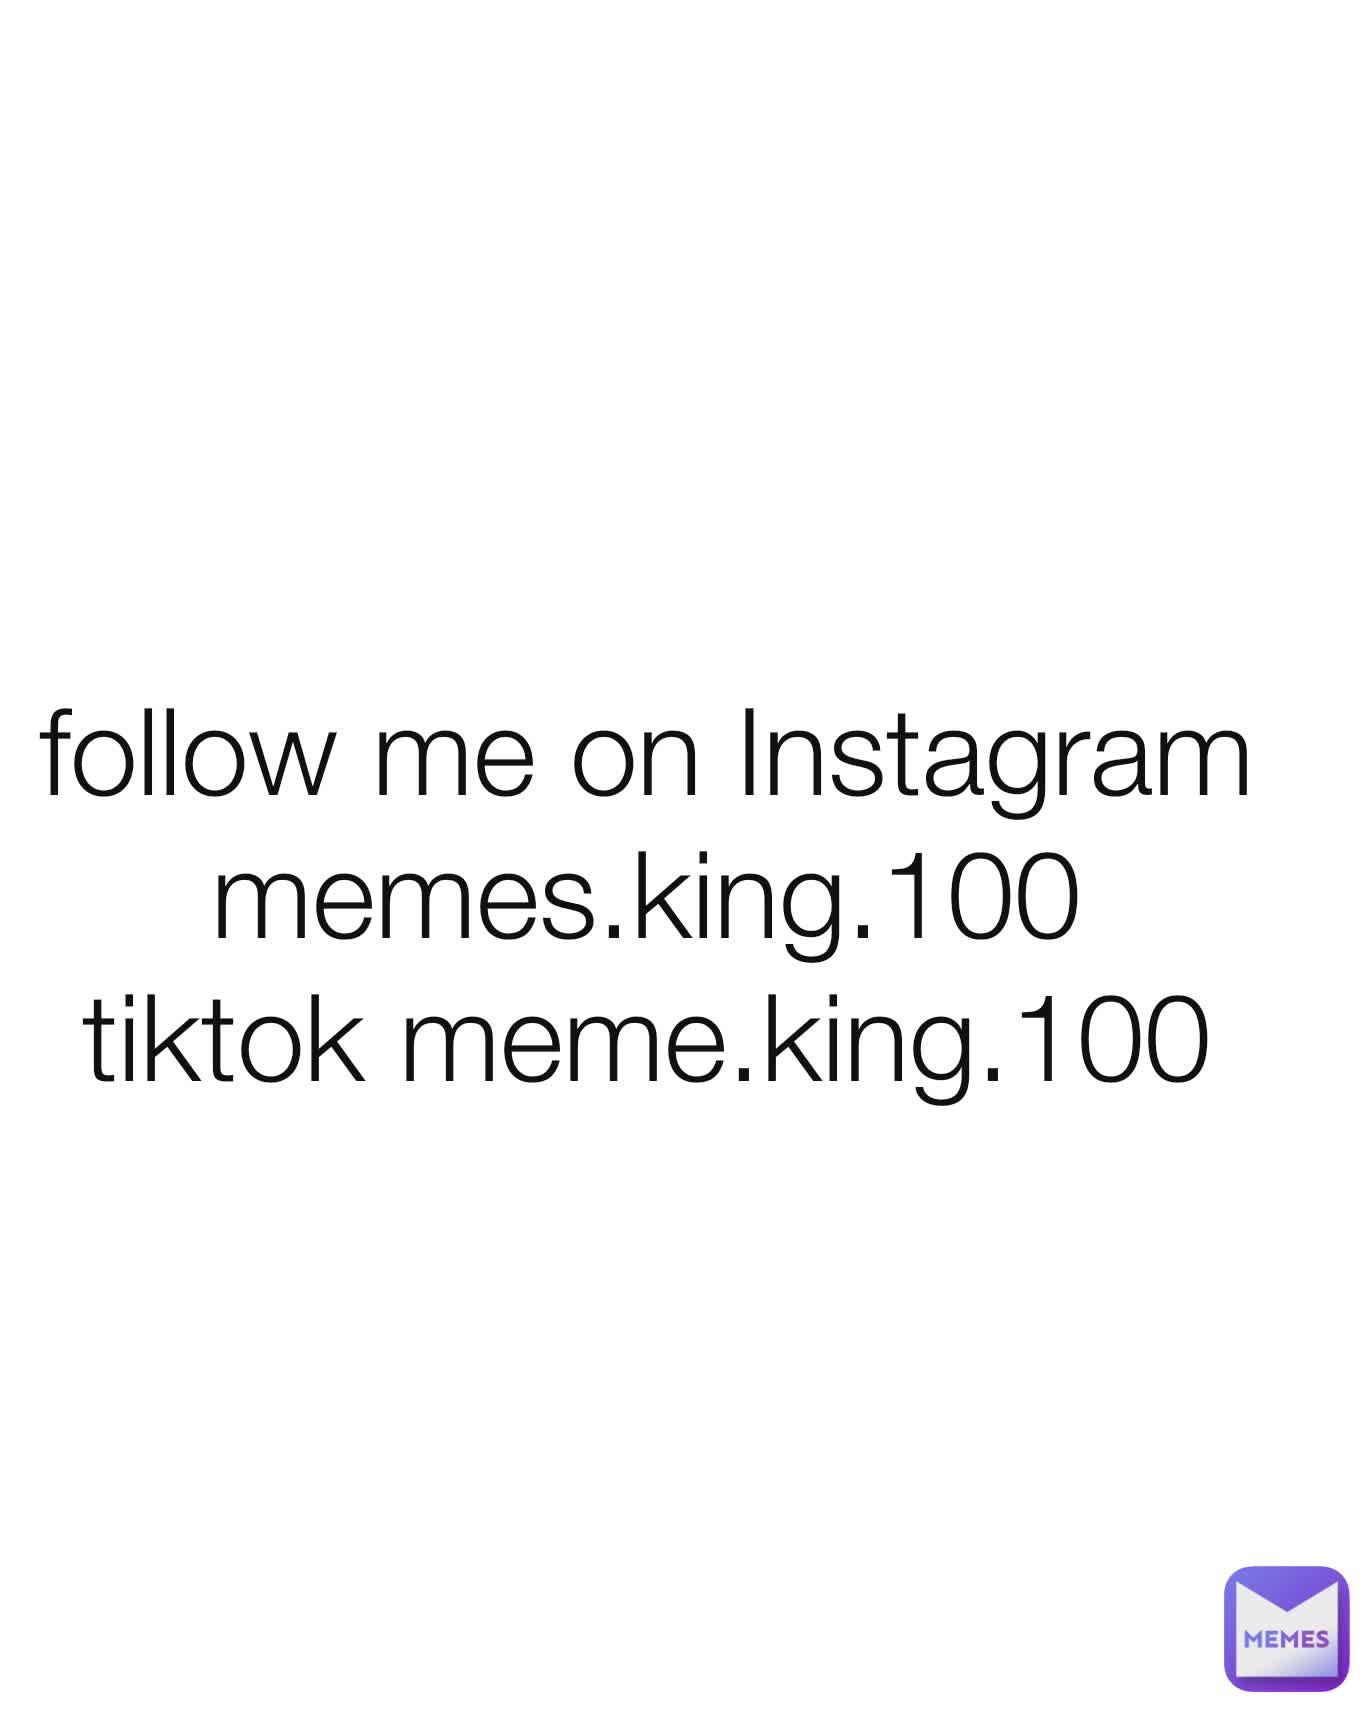 follow me on Instagram memes.king.100
tiktok meme.king.100
